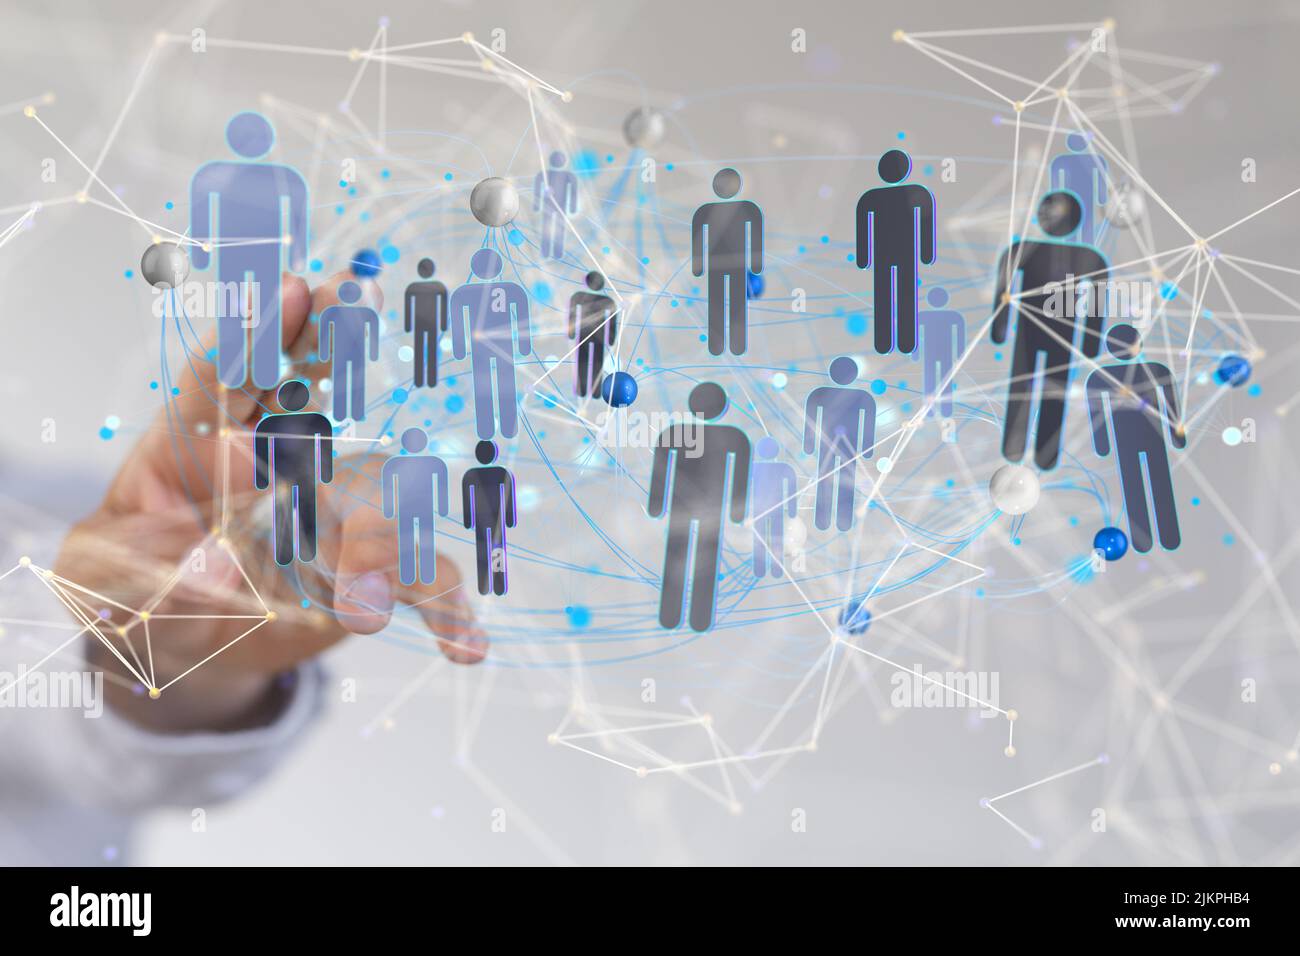 Eine Darstellung von menschlichen Symbolen aus dem Jahr 3D mit handlichem Tippen auf diese Symbole aus dem Kommunikationskonzept hinter sozialen Netzwerken Stockfoto